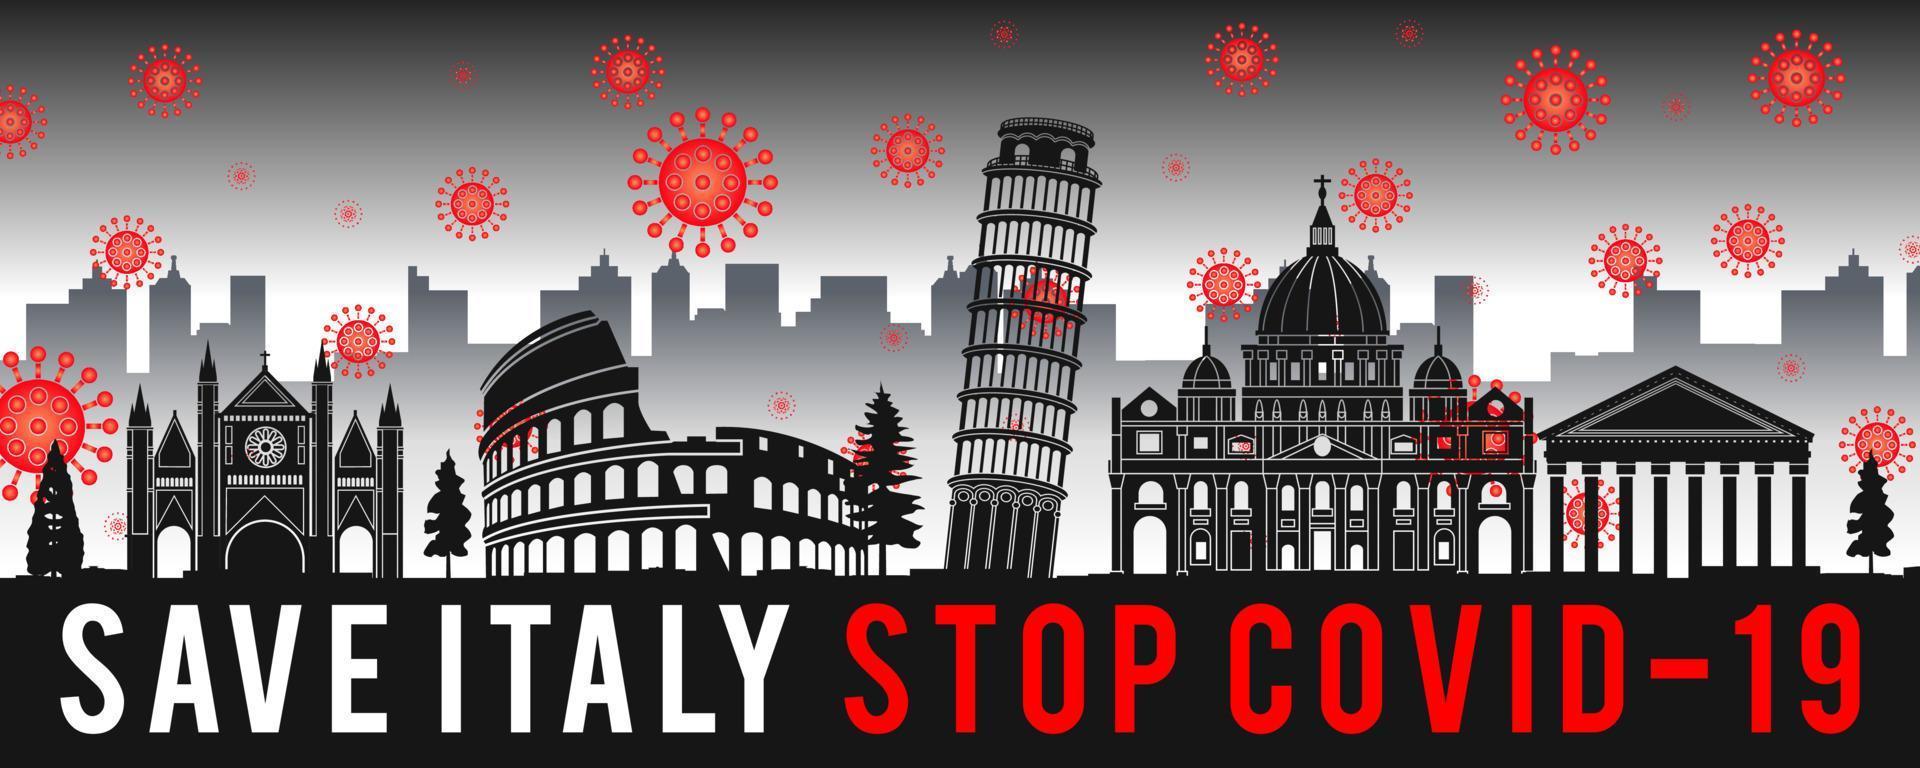 arte conceitual com coronavírus sobrevoa marcos da itália vetor